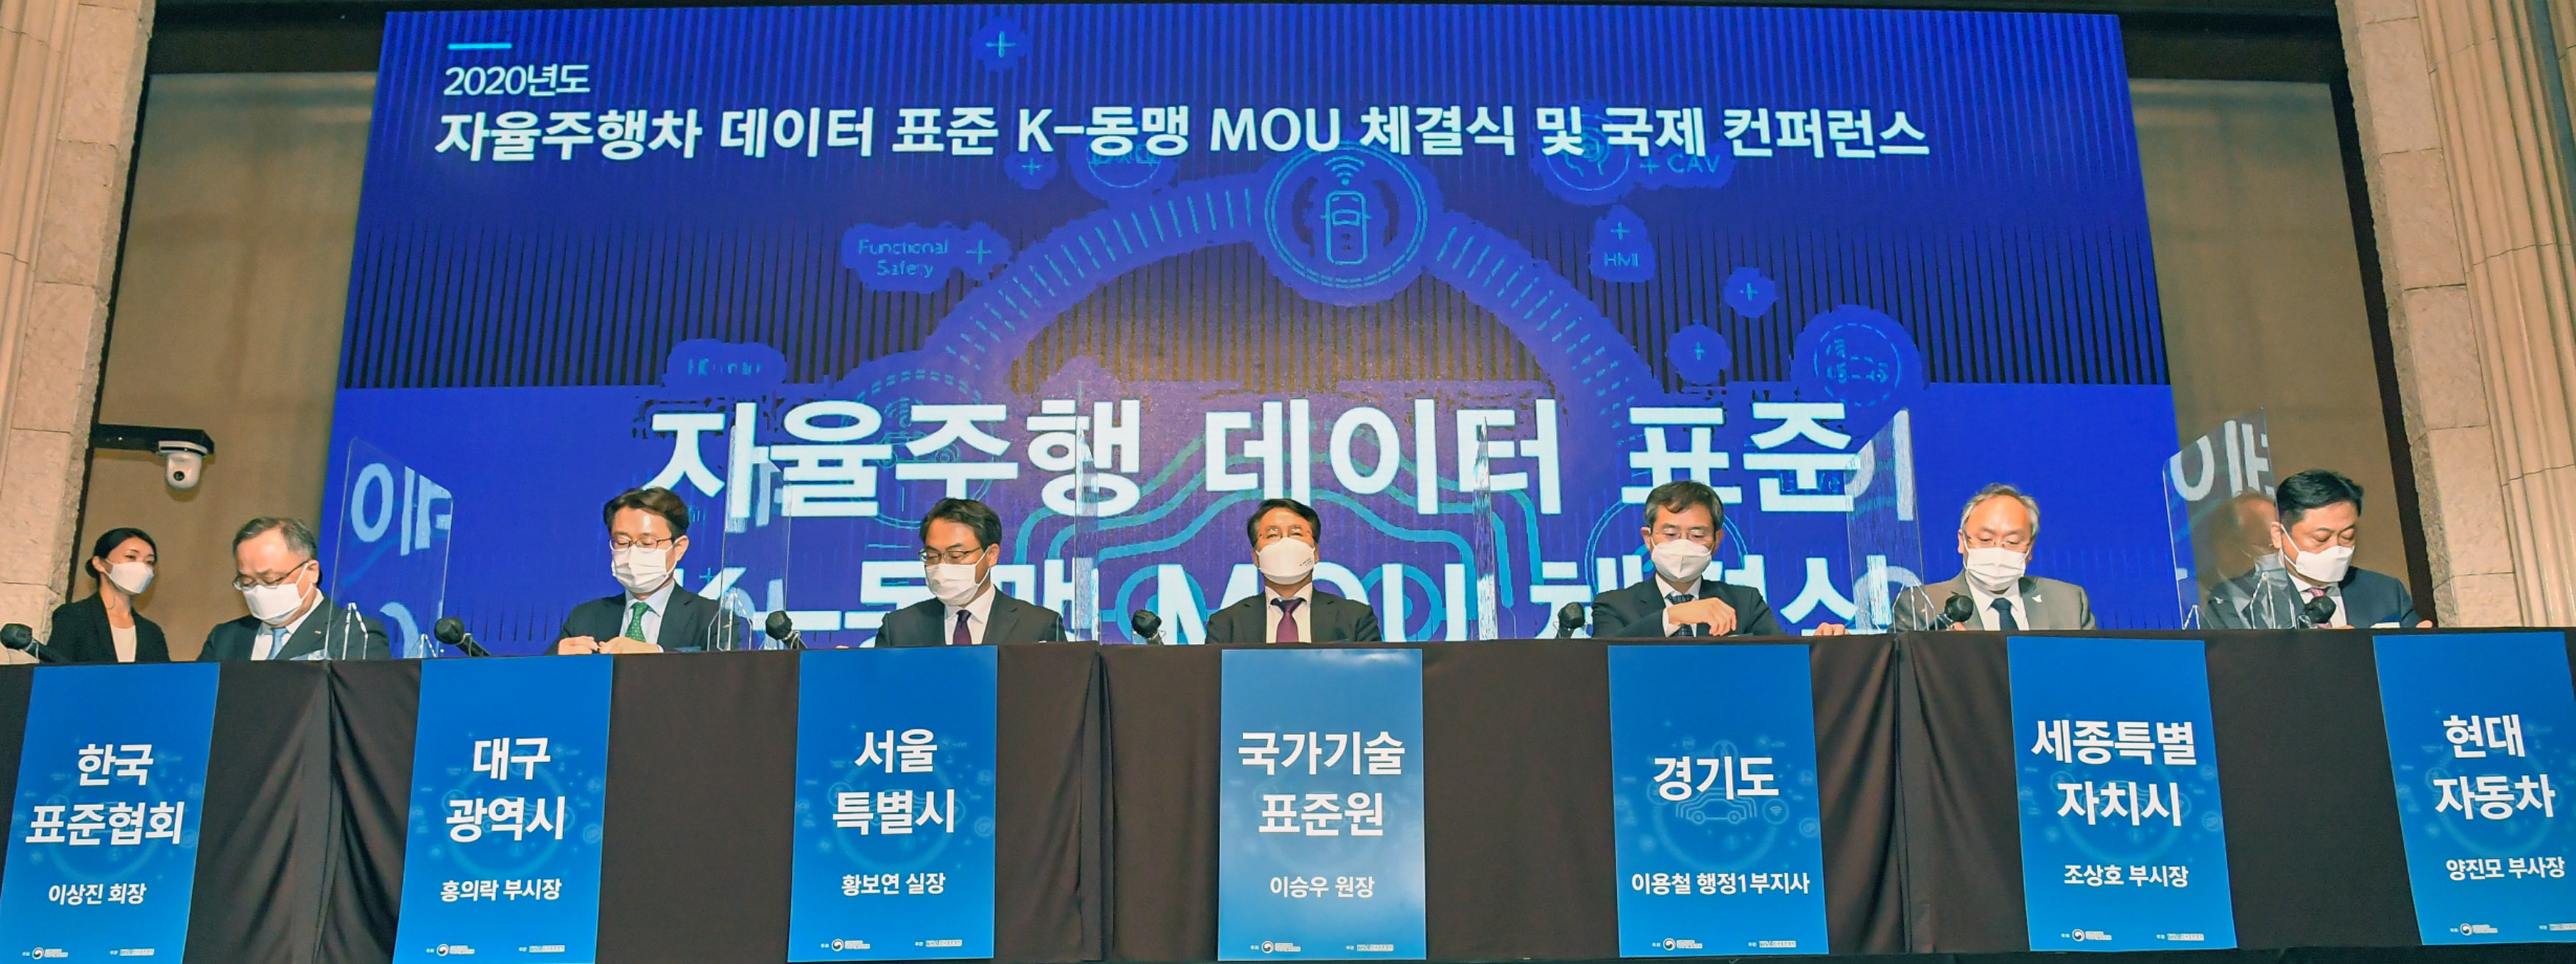 자율주행차 데이터 표준 K-동맹 MOU 체결식 개최